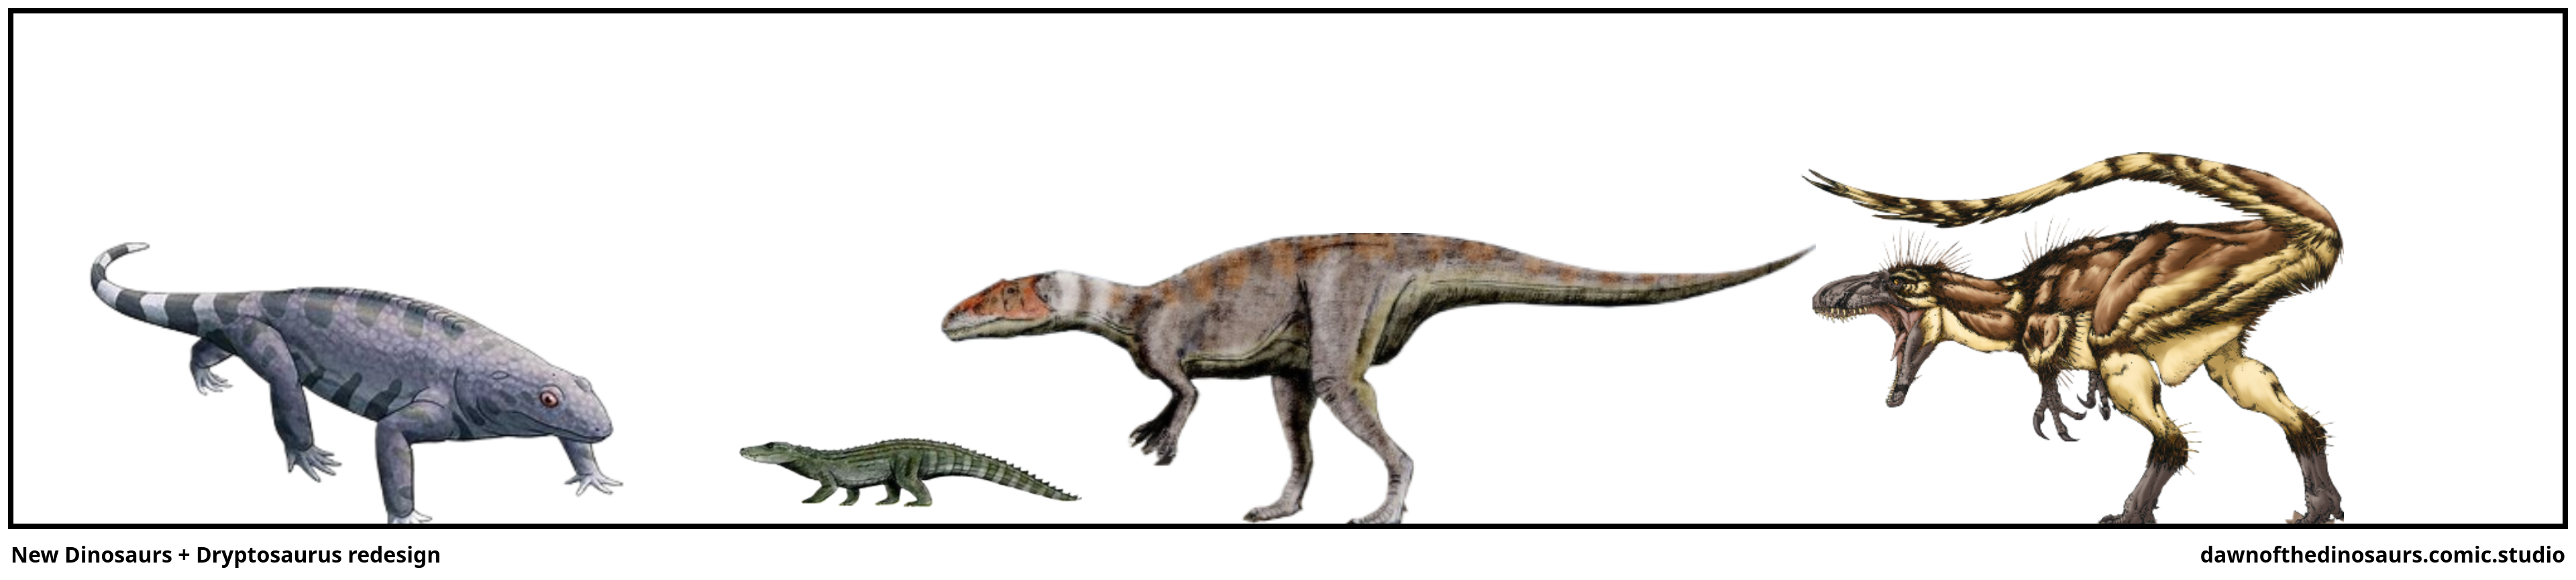 New Dinosaurs + Dryptosaurus redesign